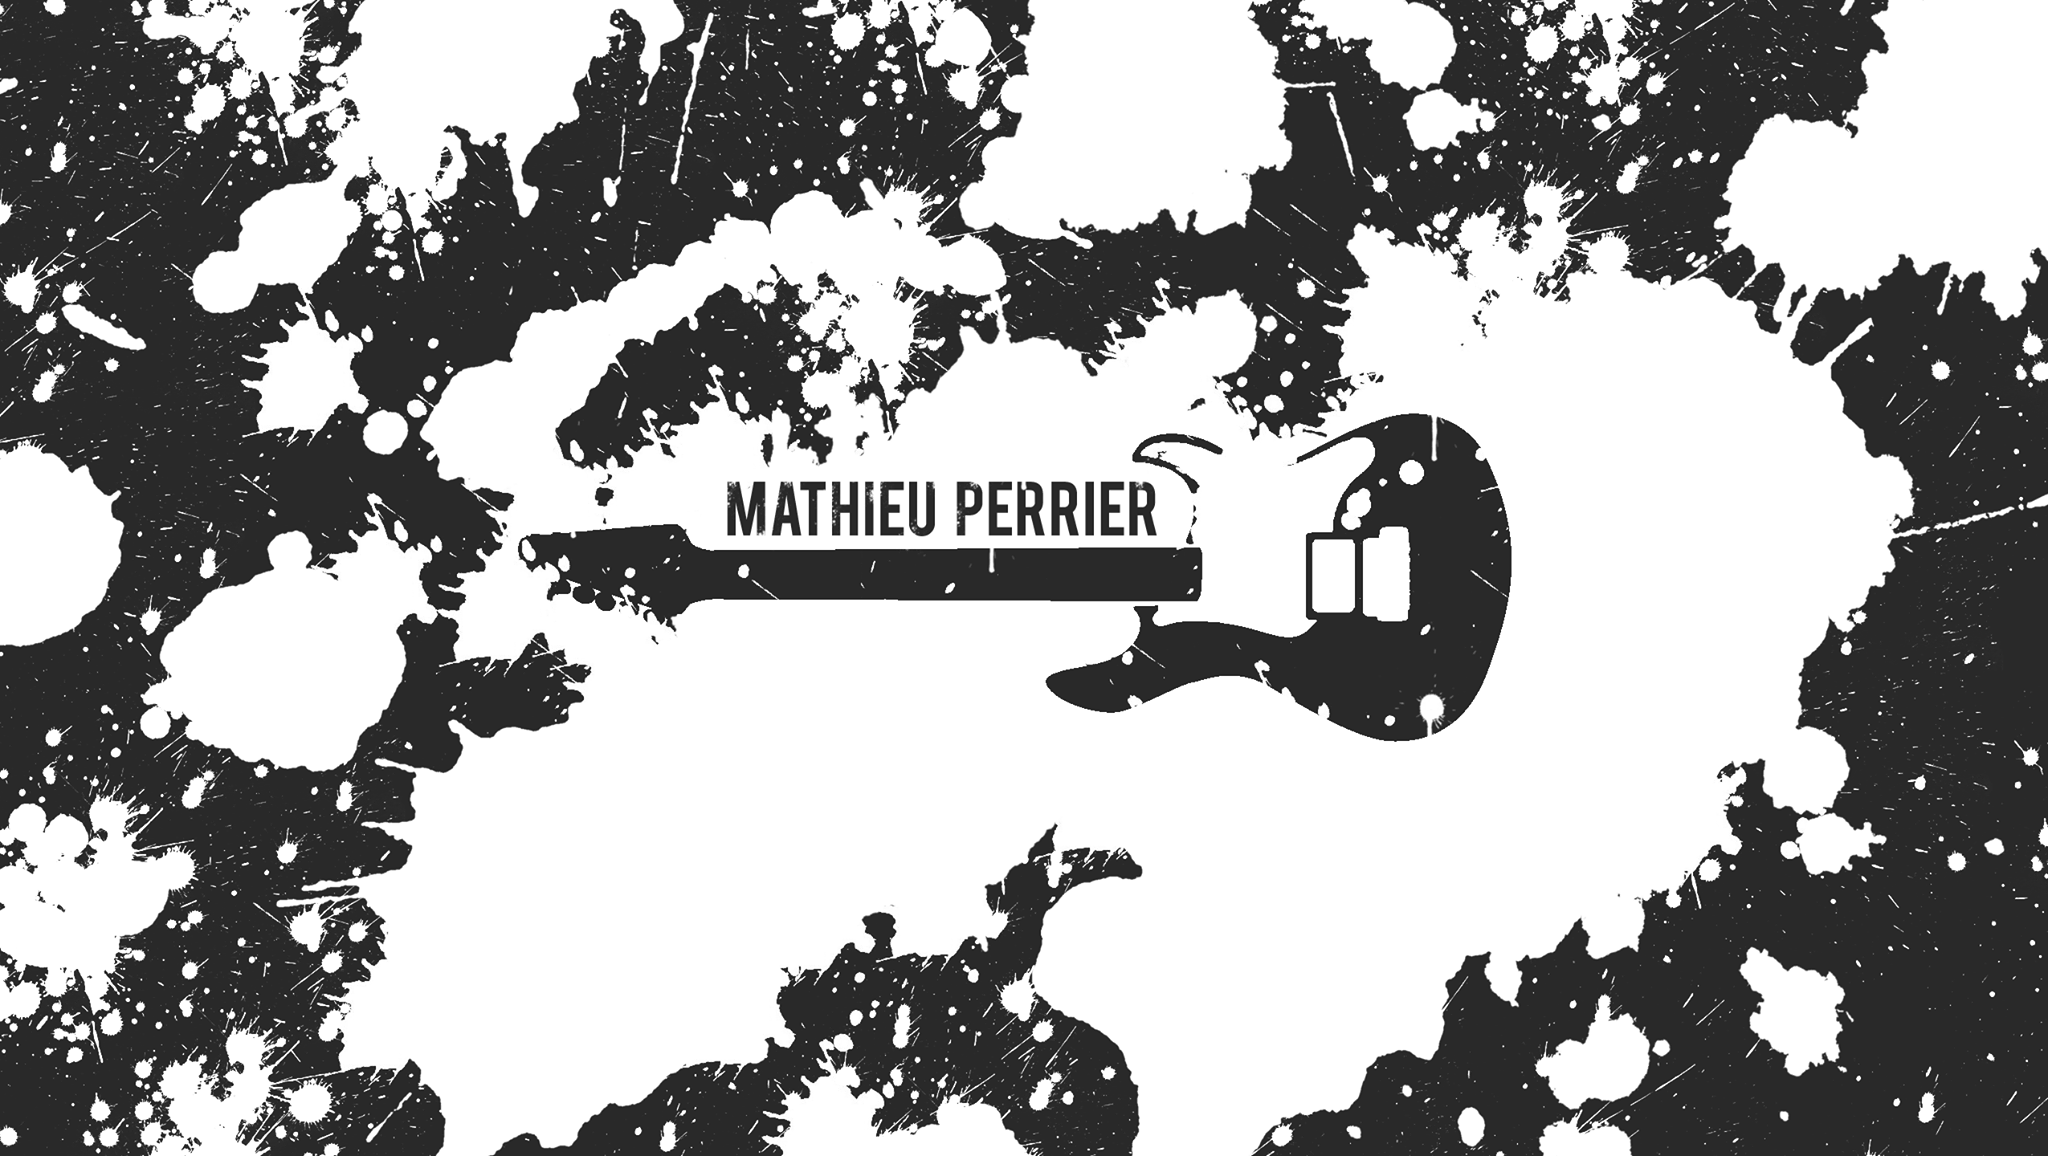 Mathieu Perrier